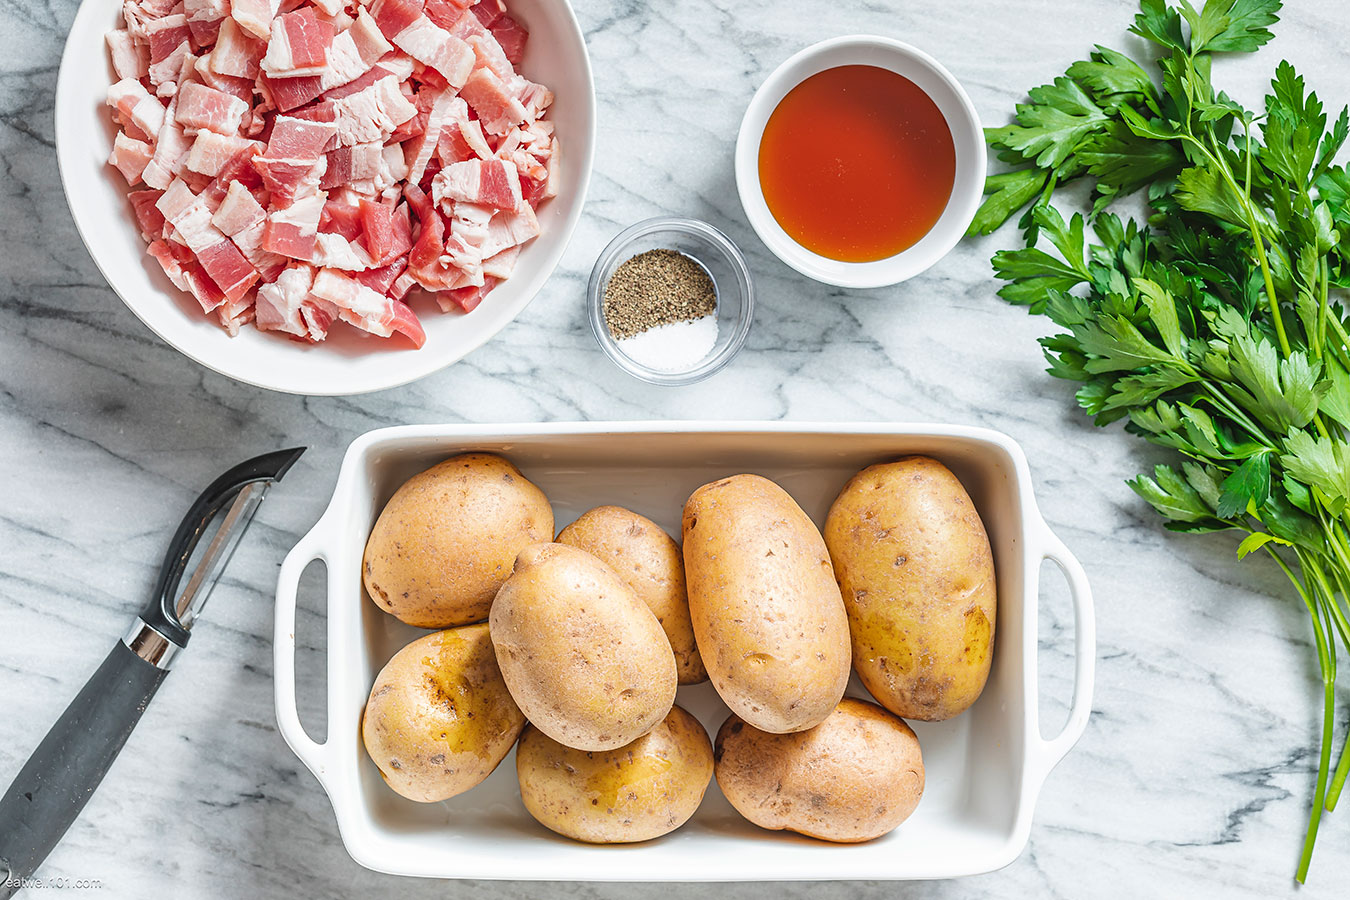 roasted potatoes ingredients